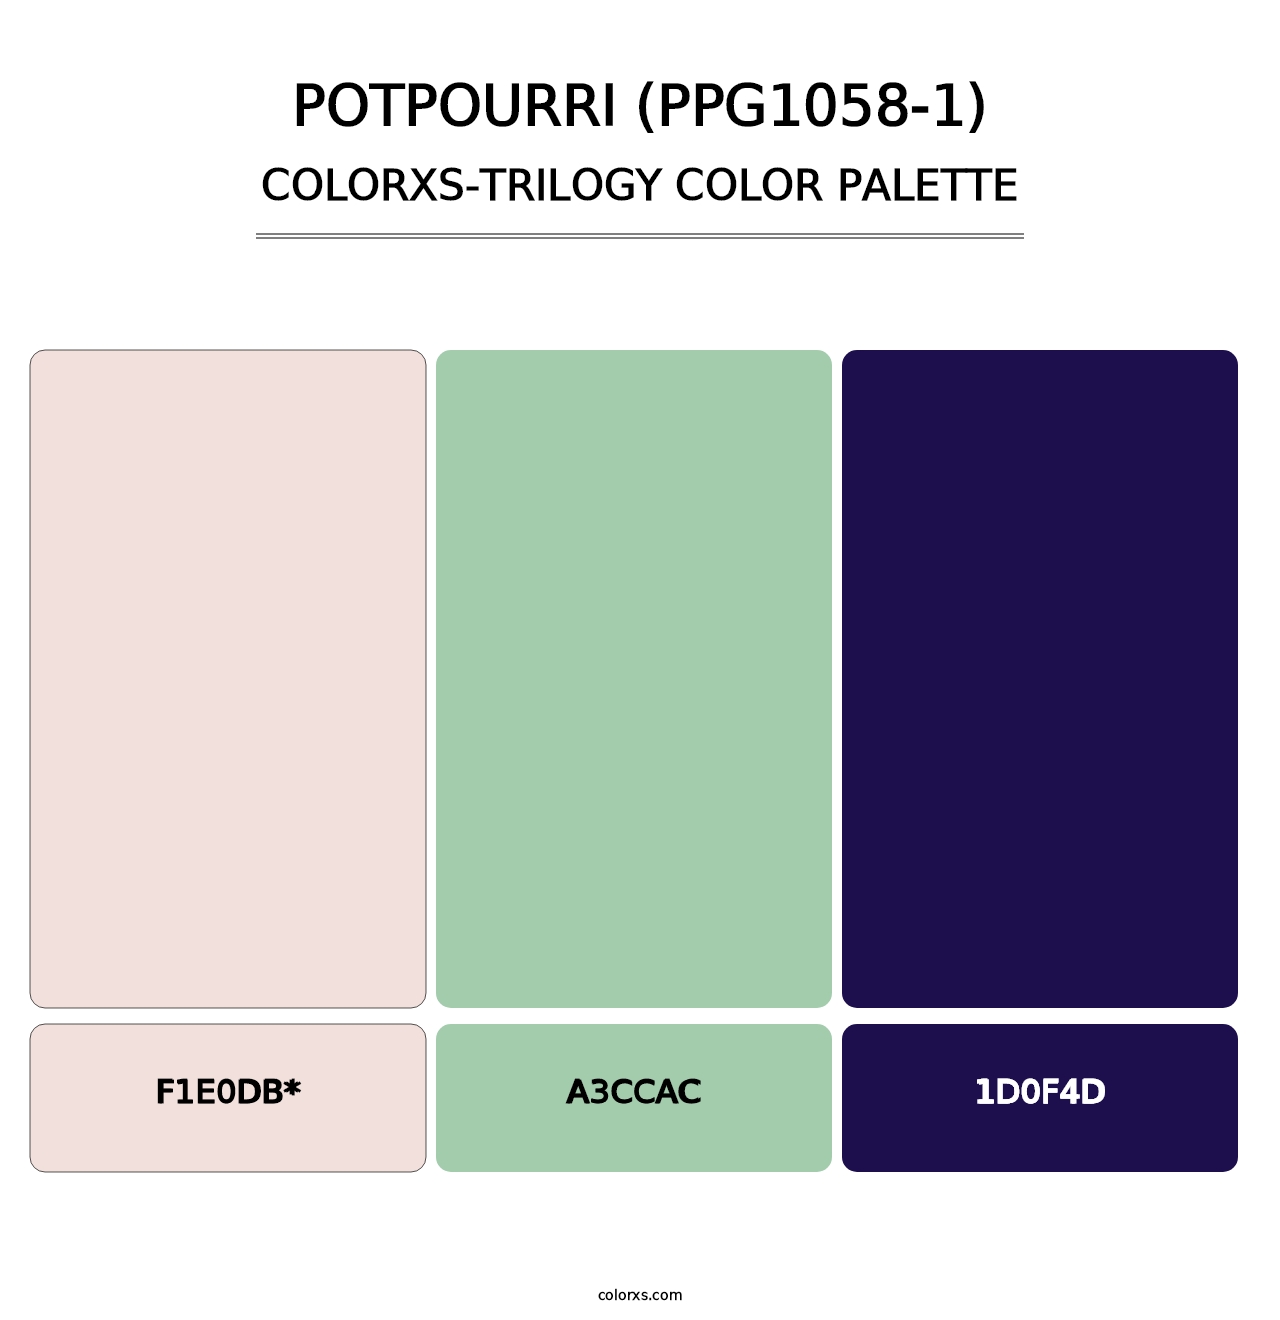 Potpourri (PPG1058-1) - Colorxs Trilogy Palette